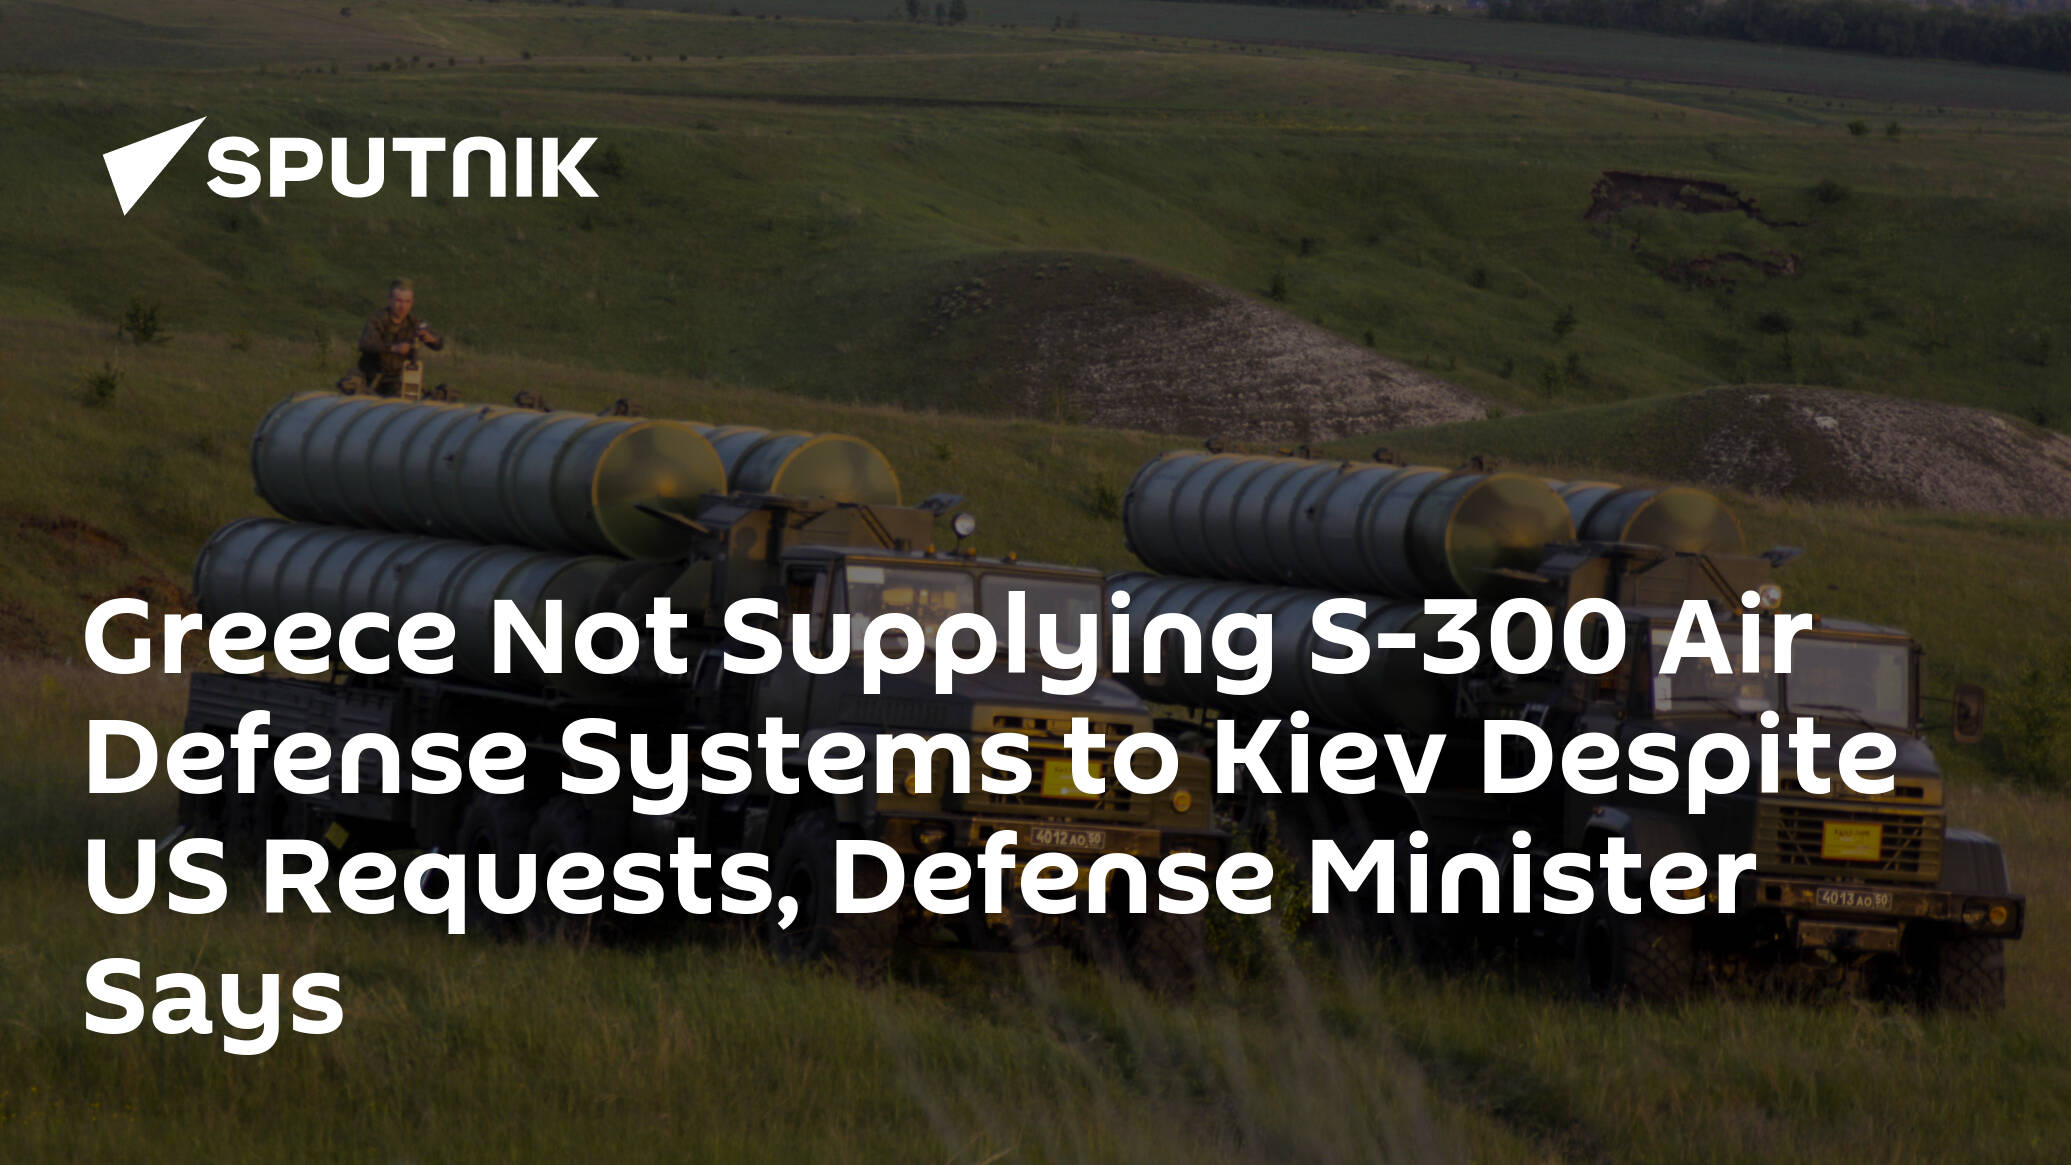 Hindi ihahatid ng Greece ang S-300 air defense system sa Kiev sa kabila ng mga kahilingan ng US, sabi ng defense minister